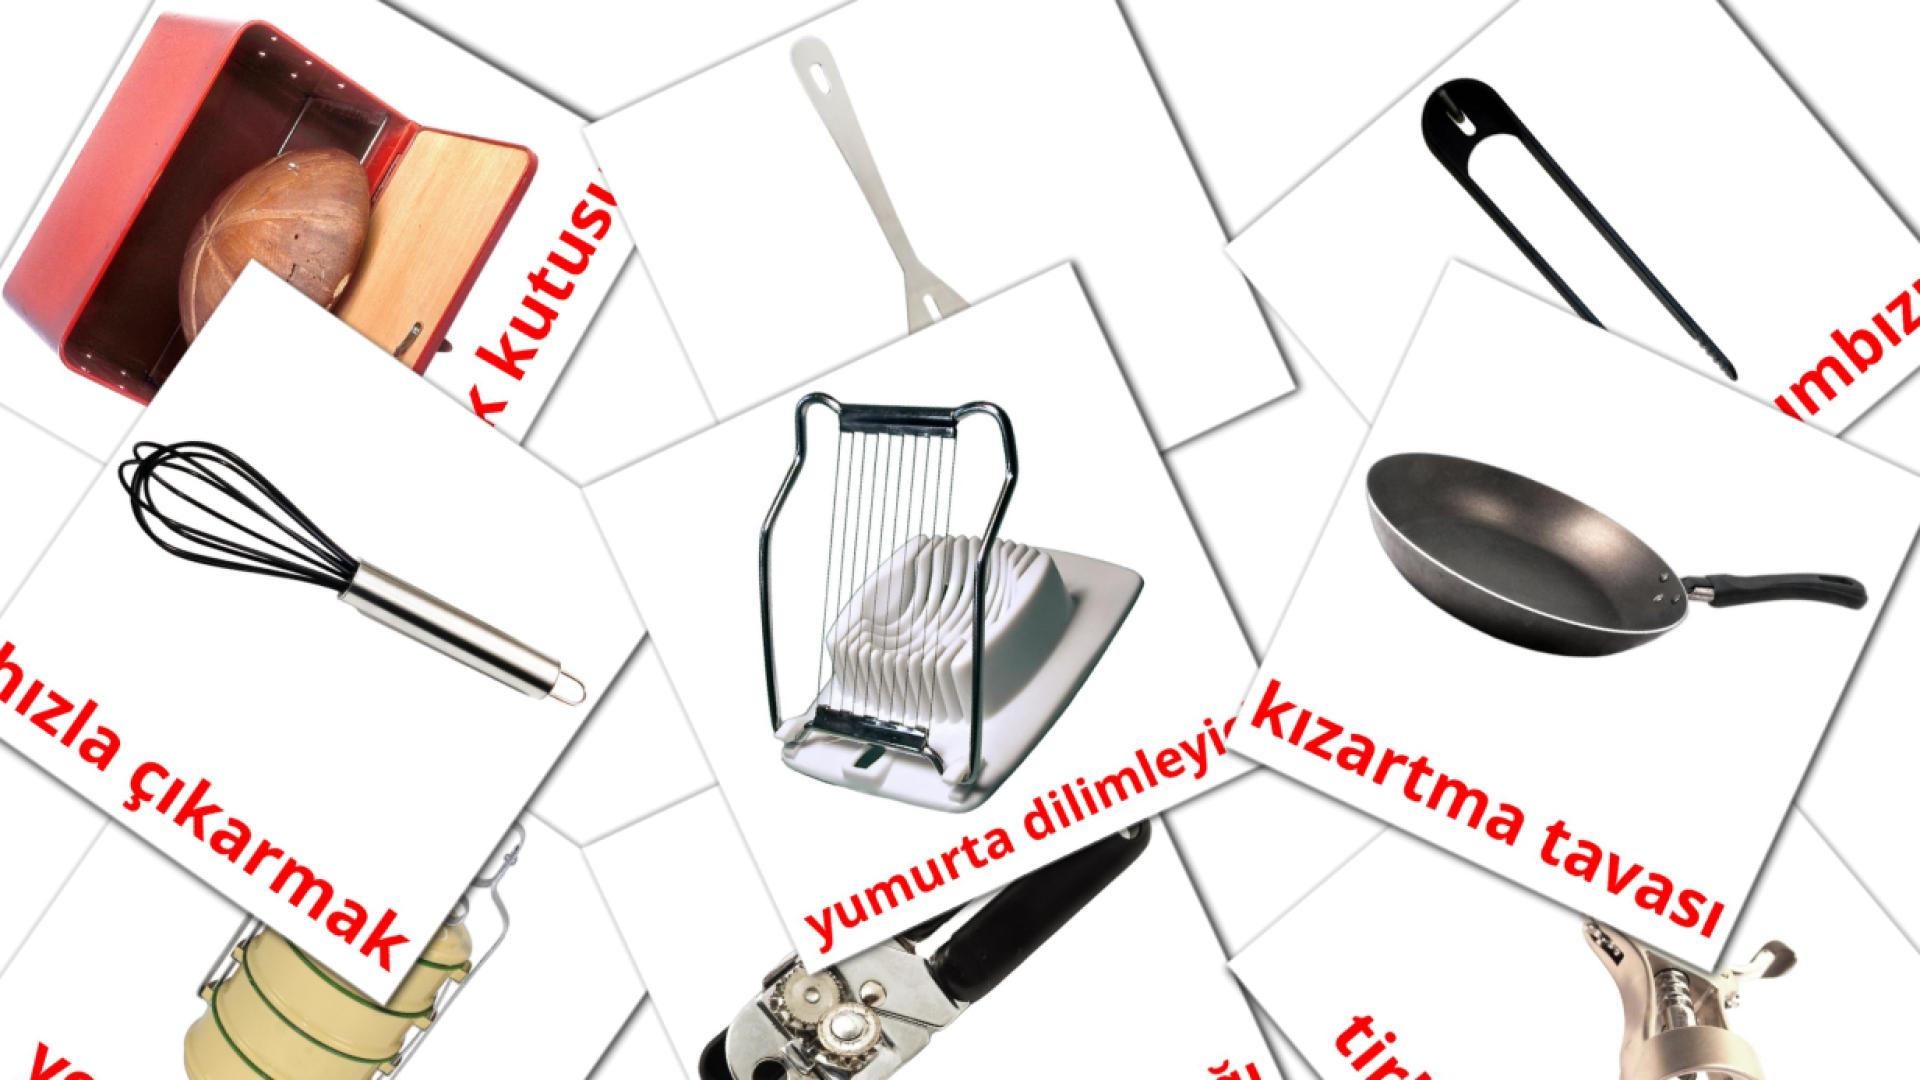 31 Imagiers Kitchenware mutfak eşyaları